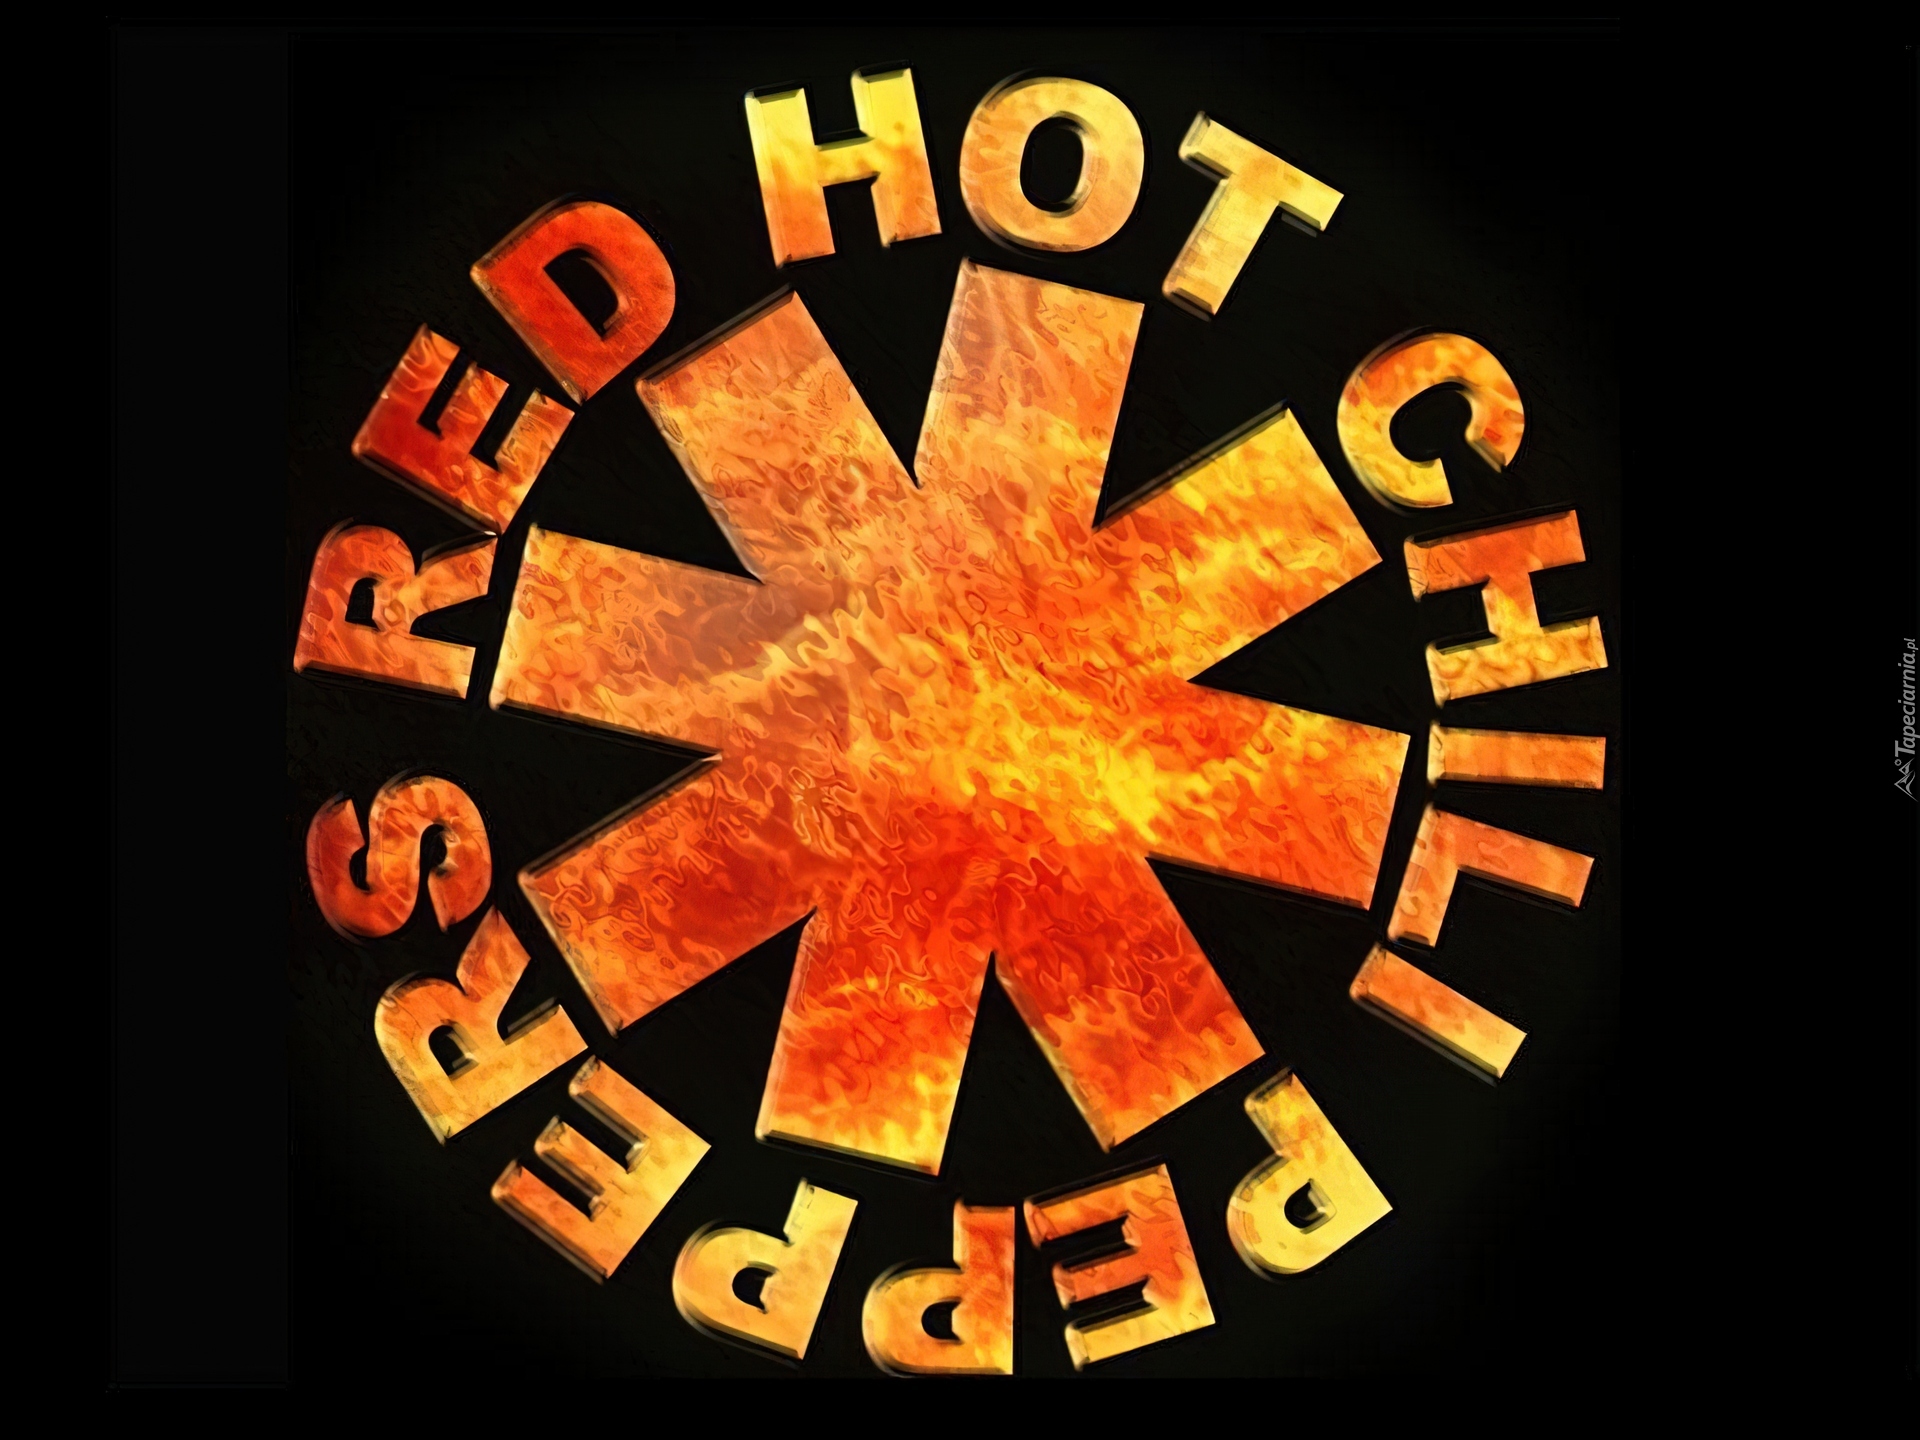 Red Hot Chili Peppers,znaczek zespołu